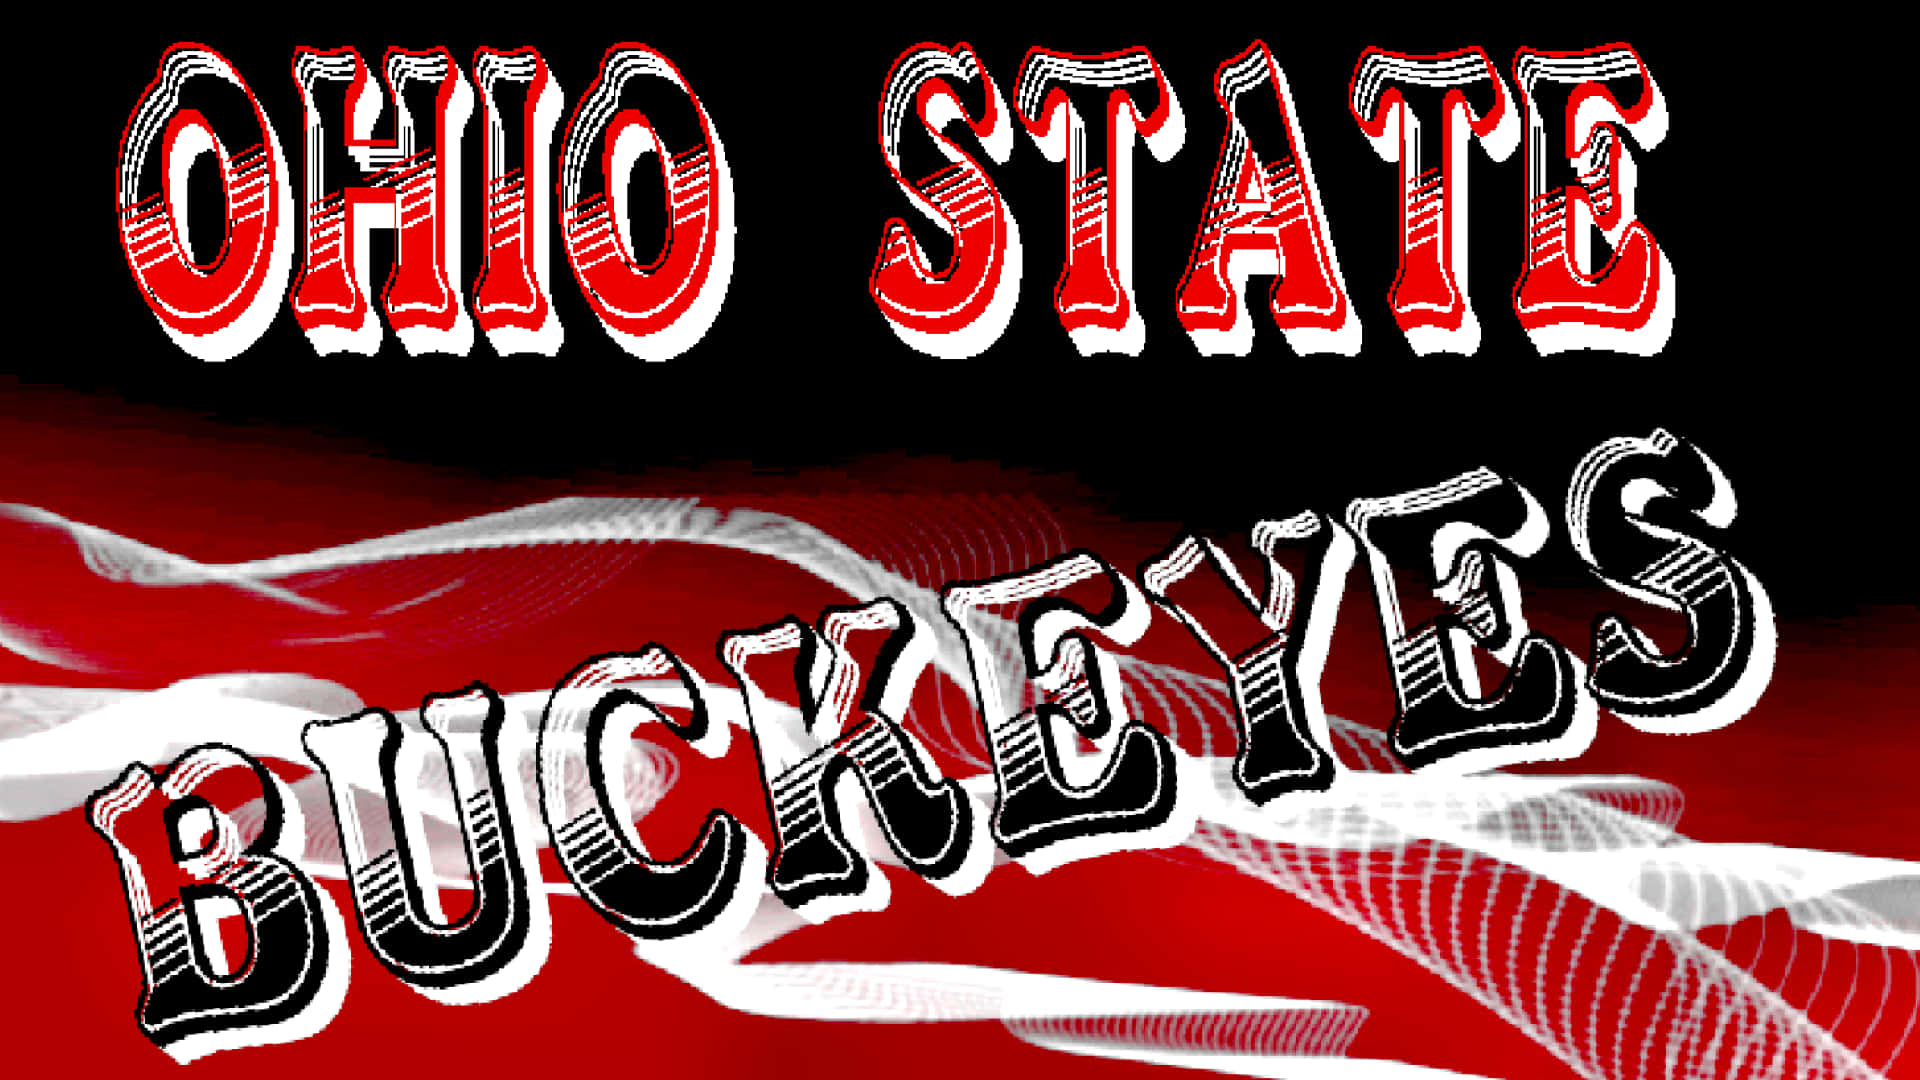 Oicônico Mascote Da Ohio State, O Legal Brutus, Mostra Suas Verdadeiras Cores - Go Bucks! Papel de Parede